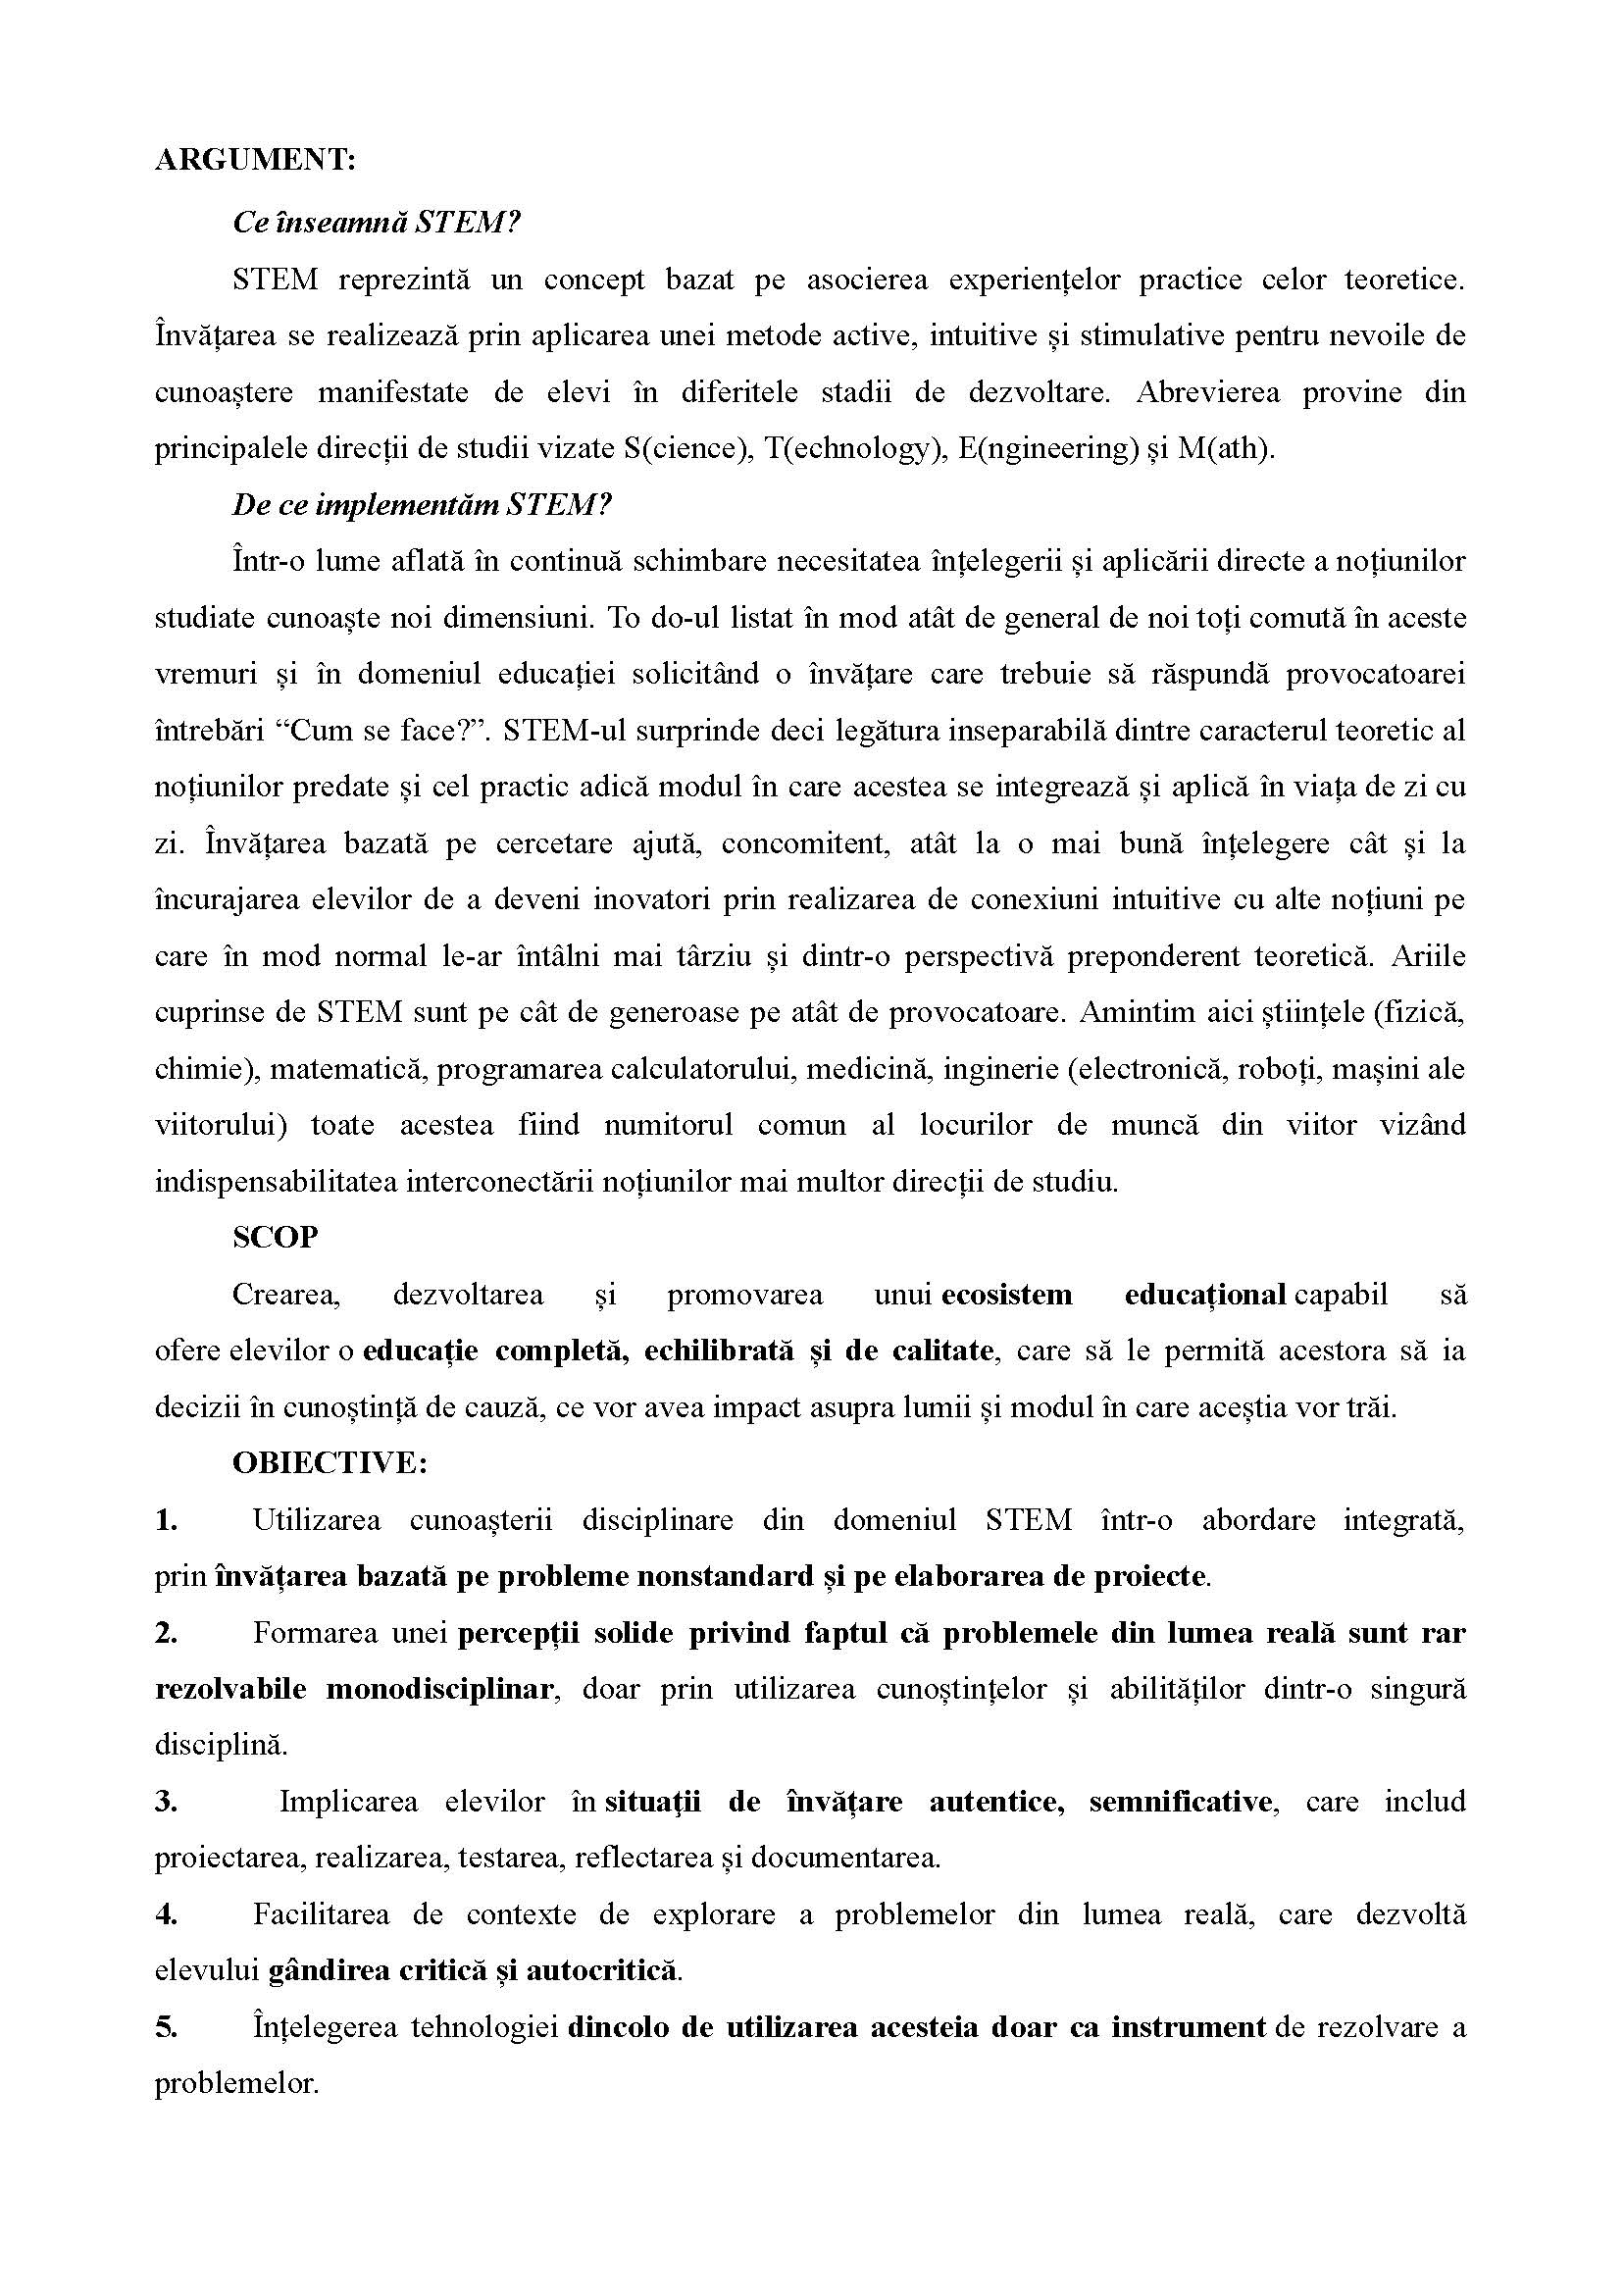 REGULAMENT DE ORGANIZARE A CERCULUI STEM.docx 1 Page 2